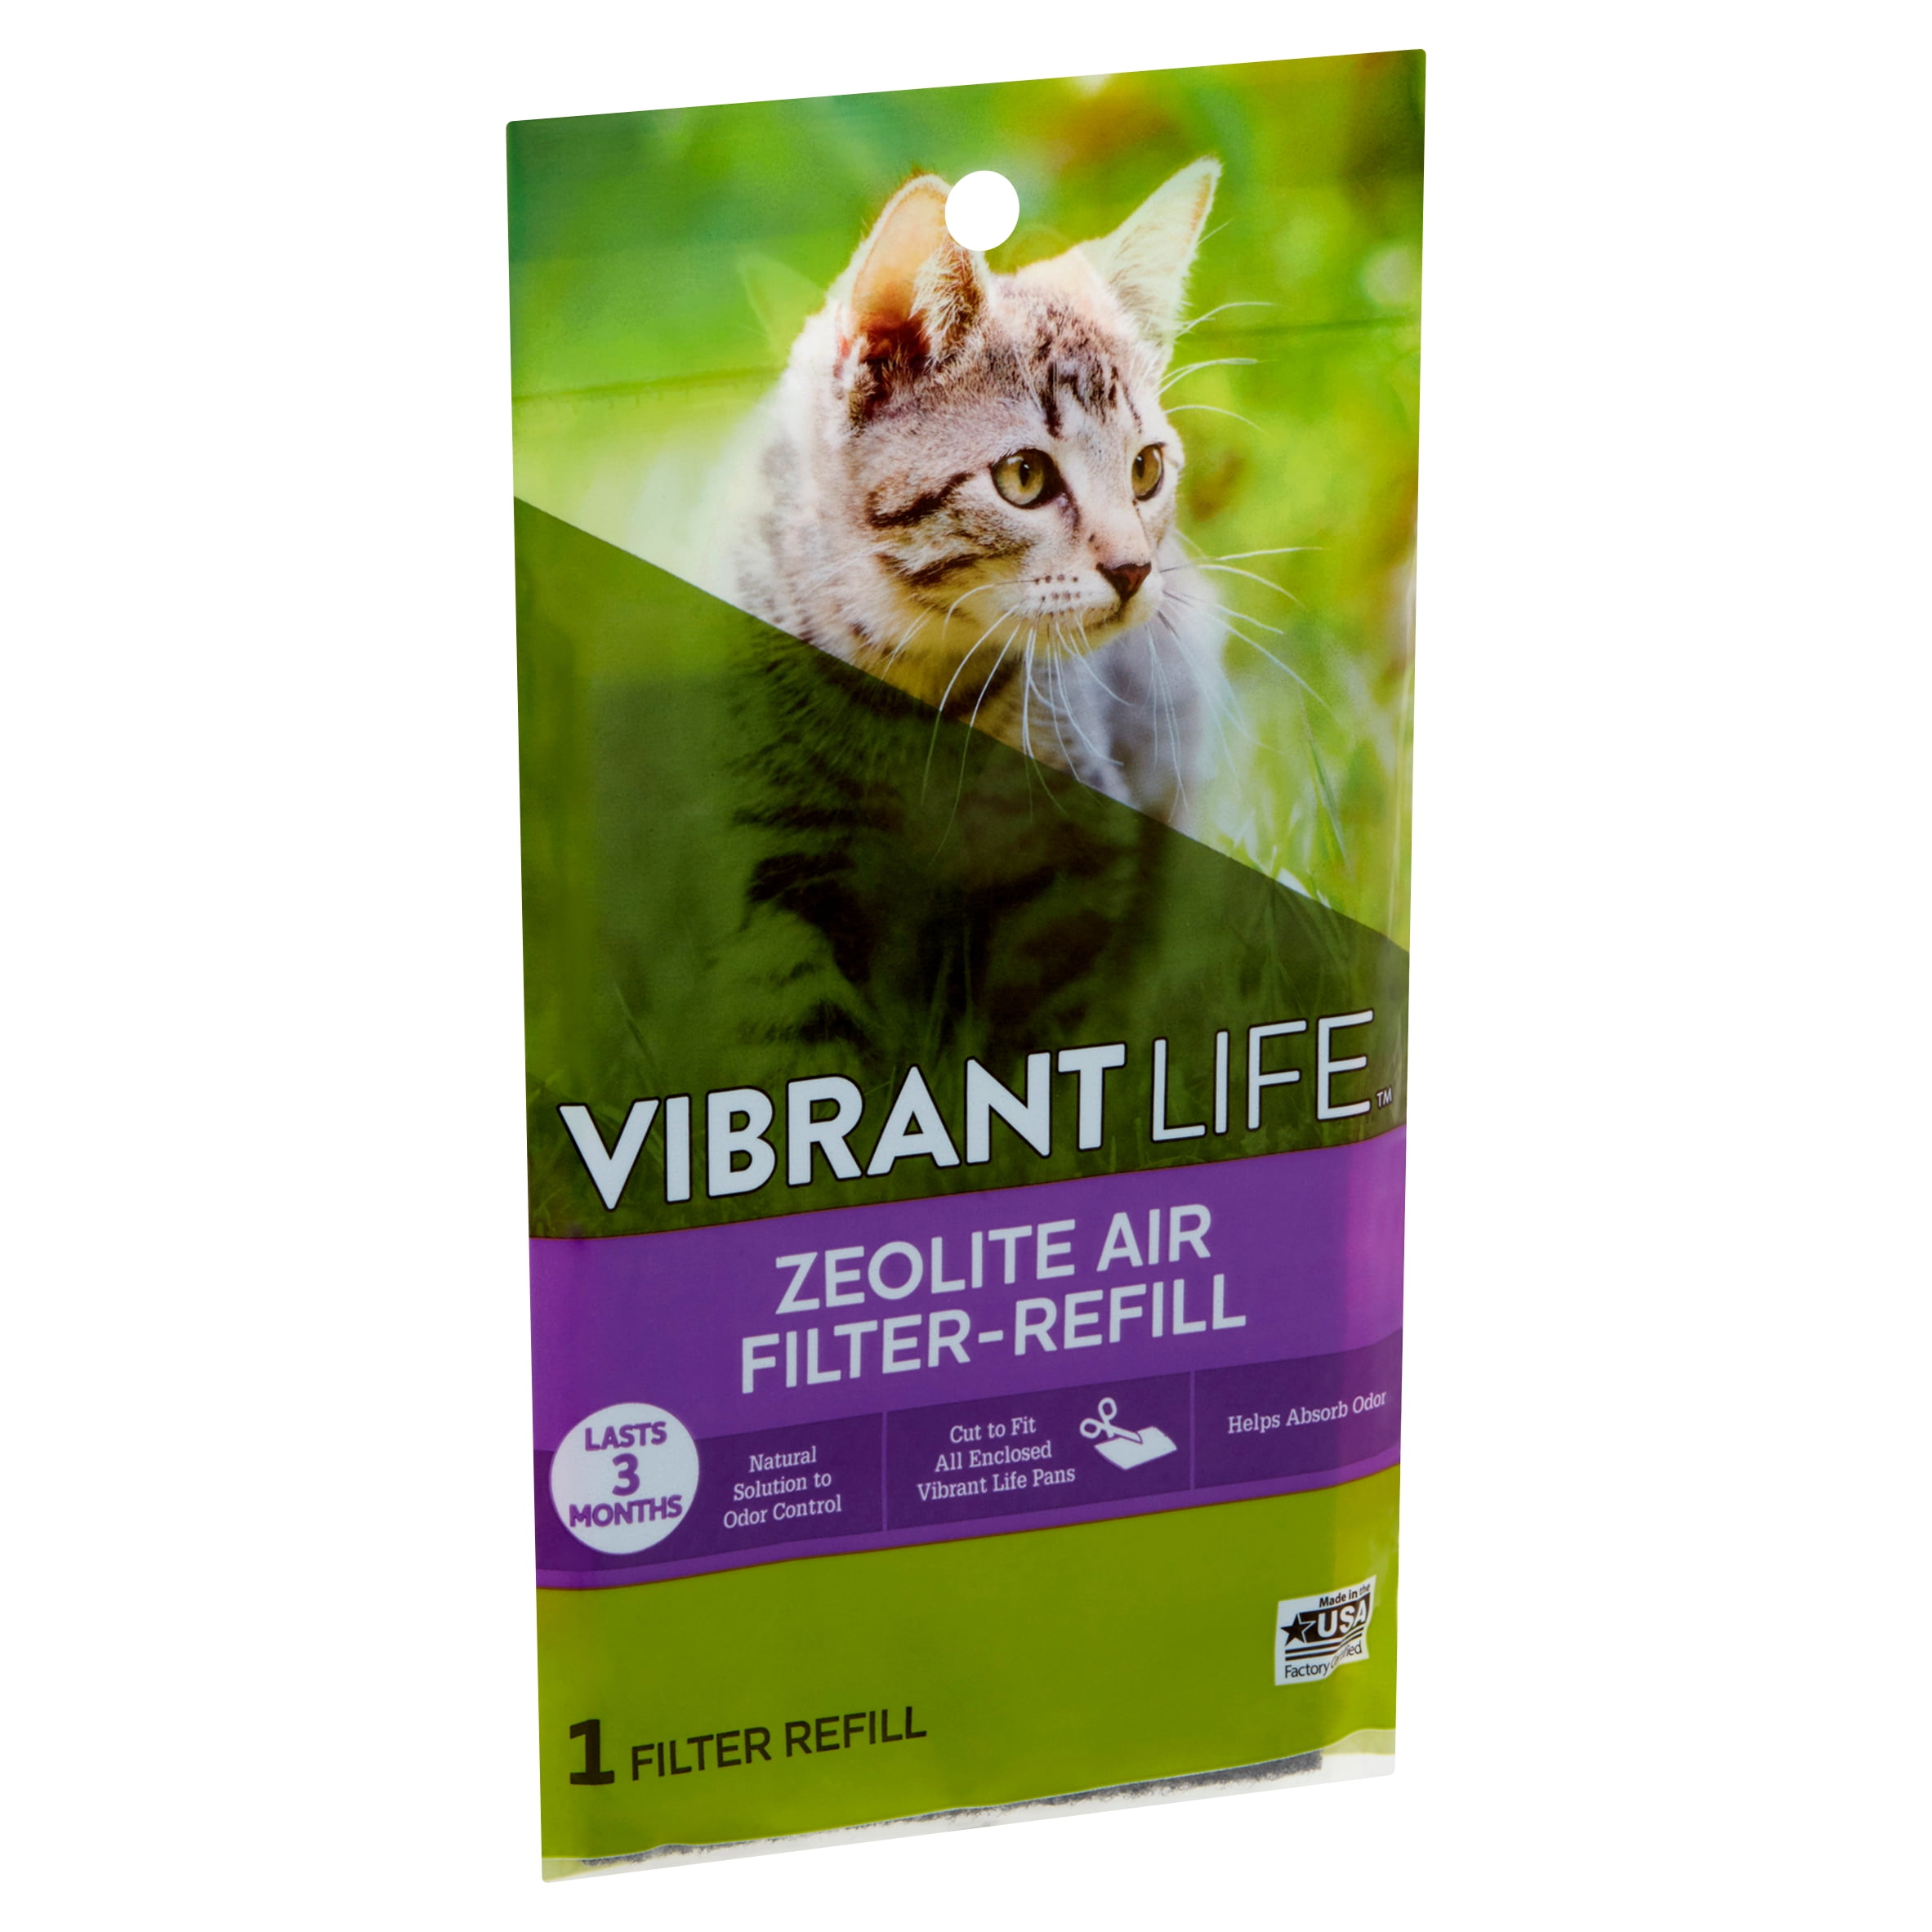 Vibrant Life Zeolite Air Filter Refill Walmart Com Walmart Com